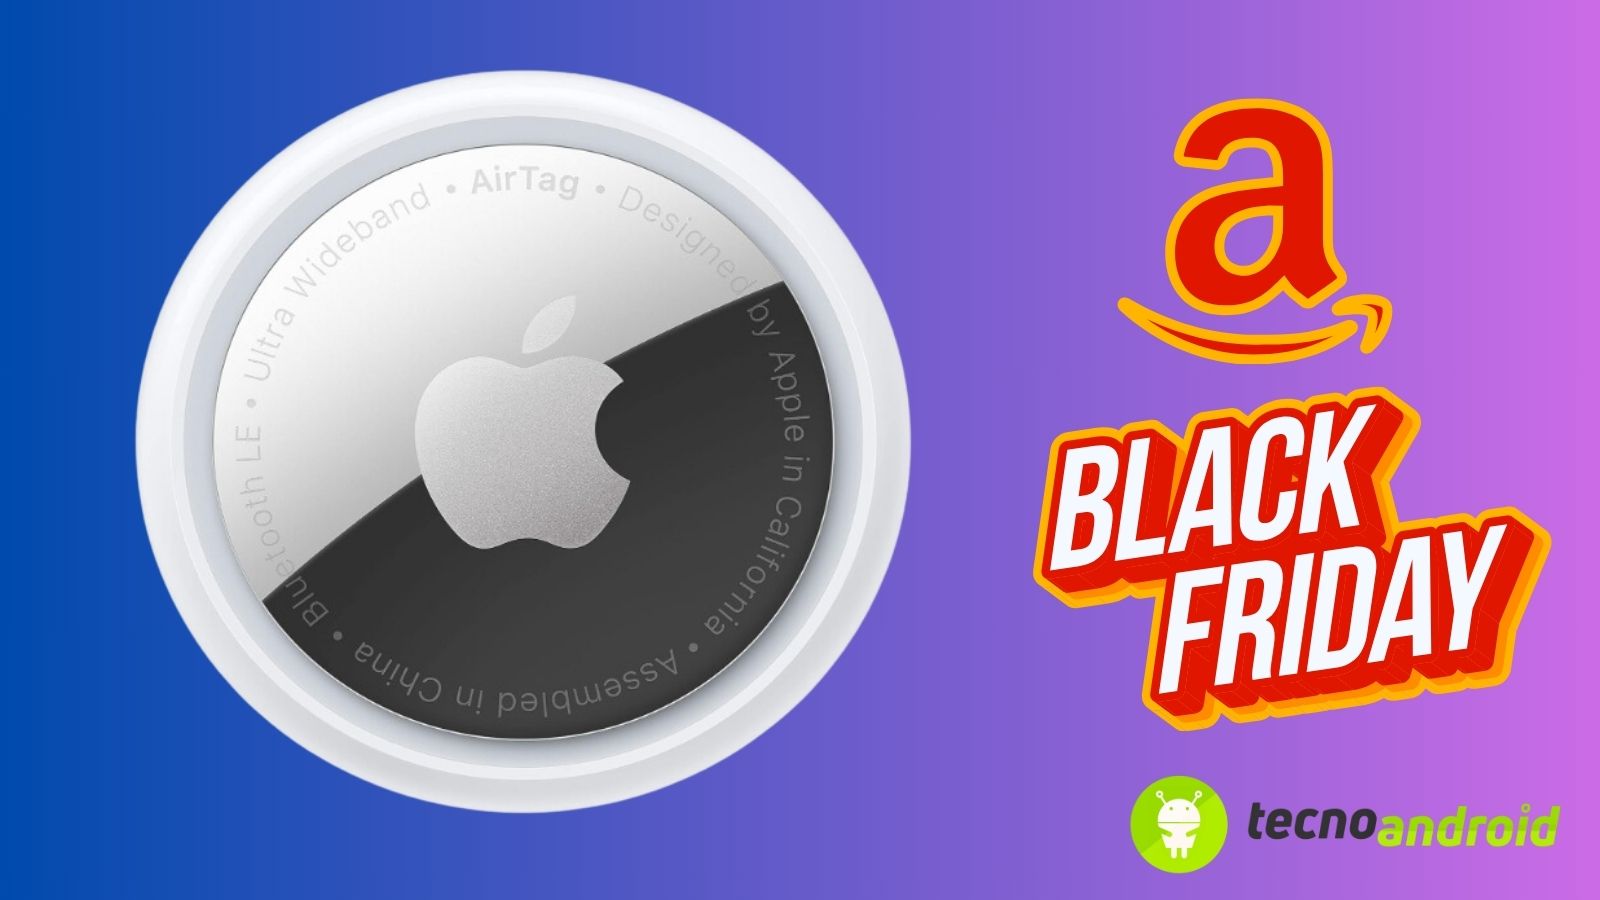 airtag apple offerta su amazon per il black friday